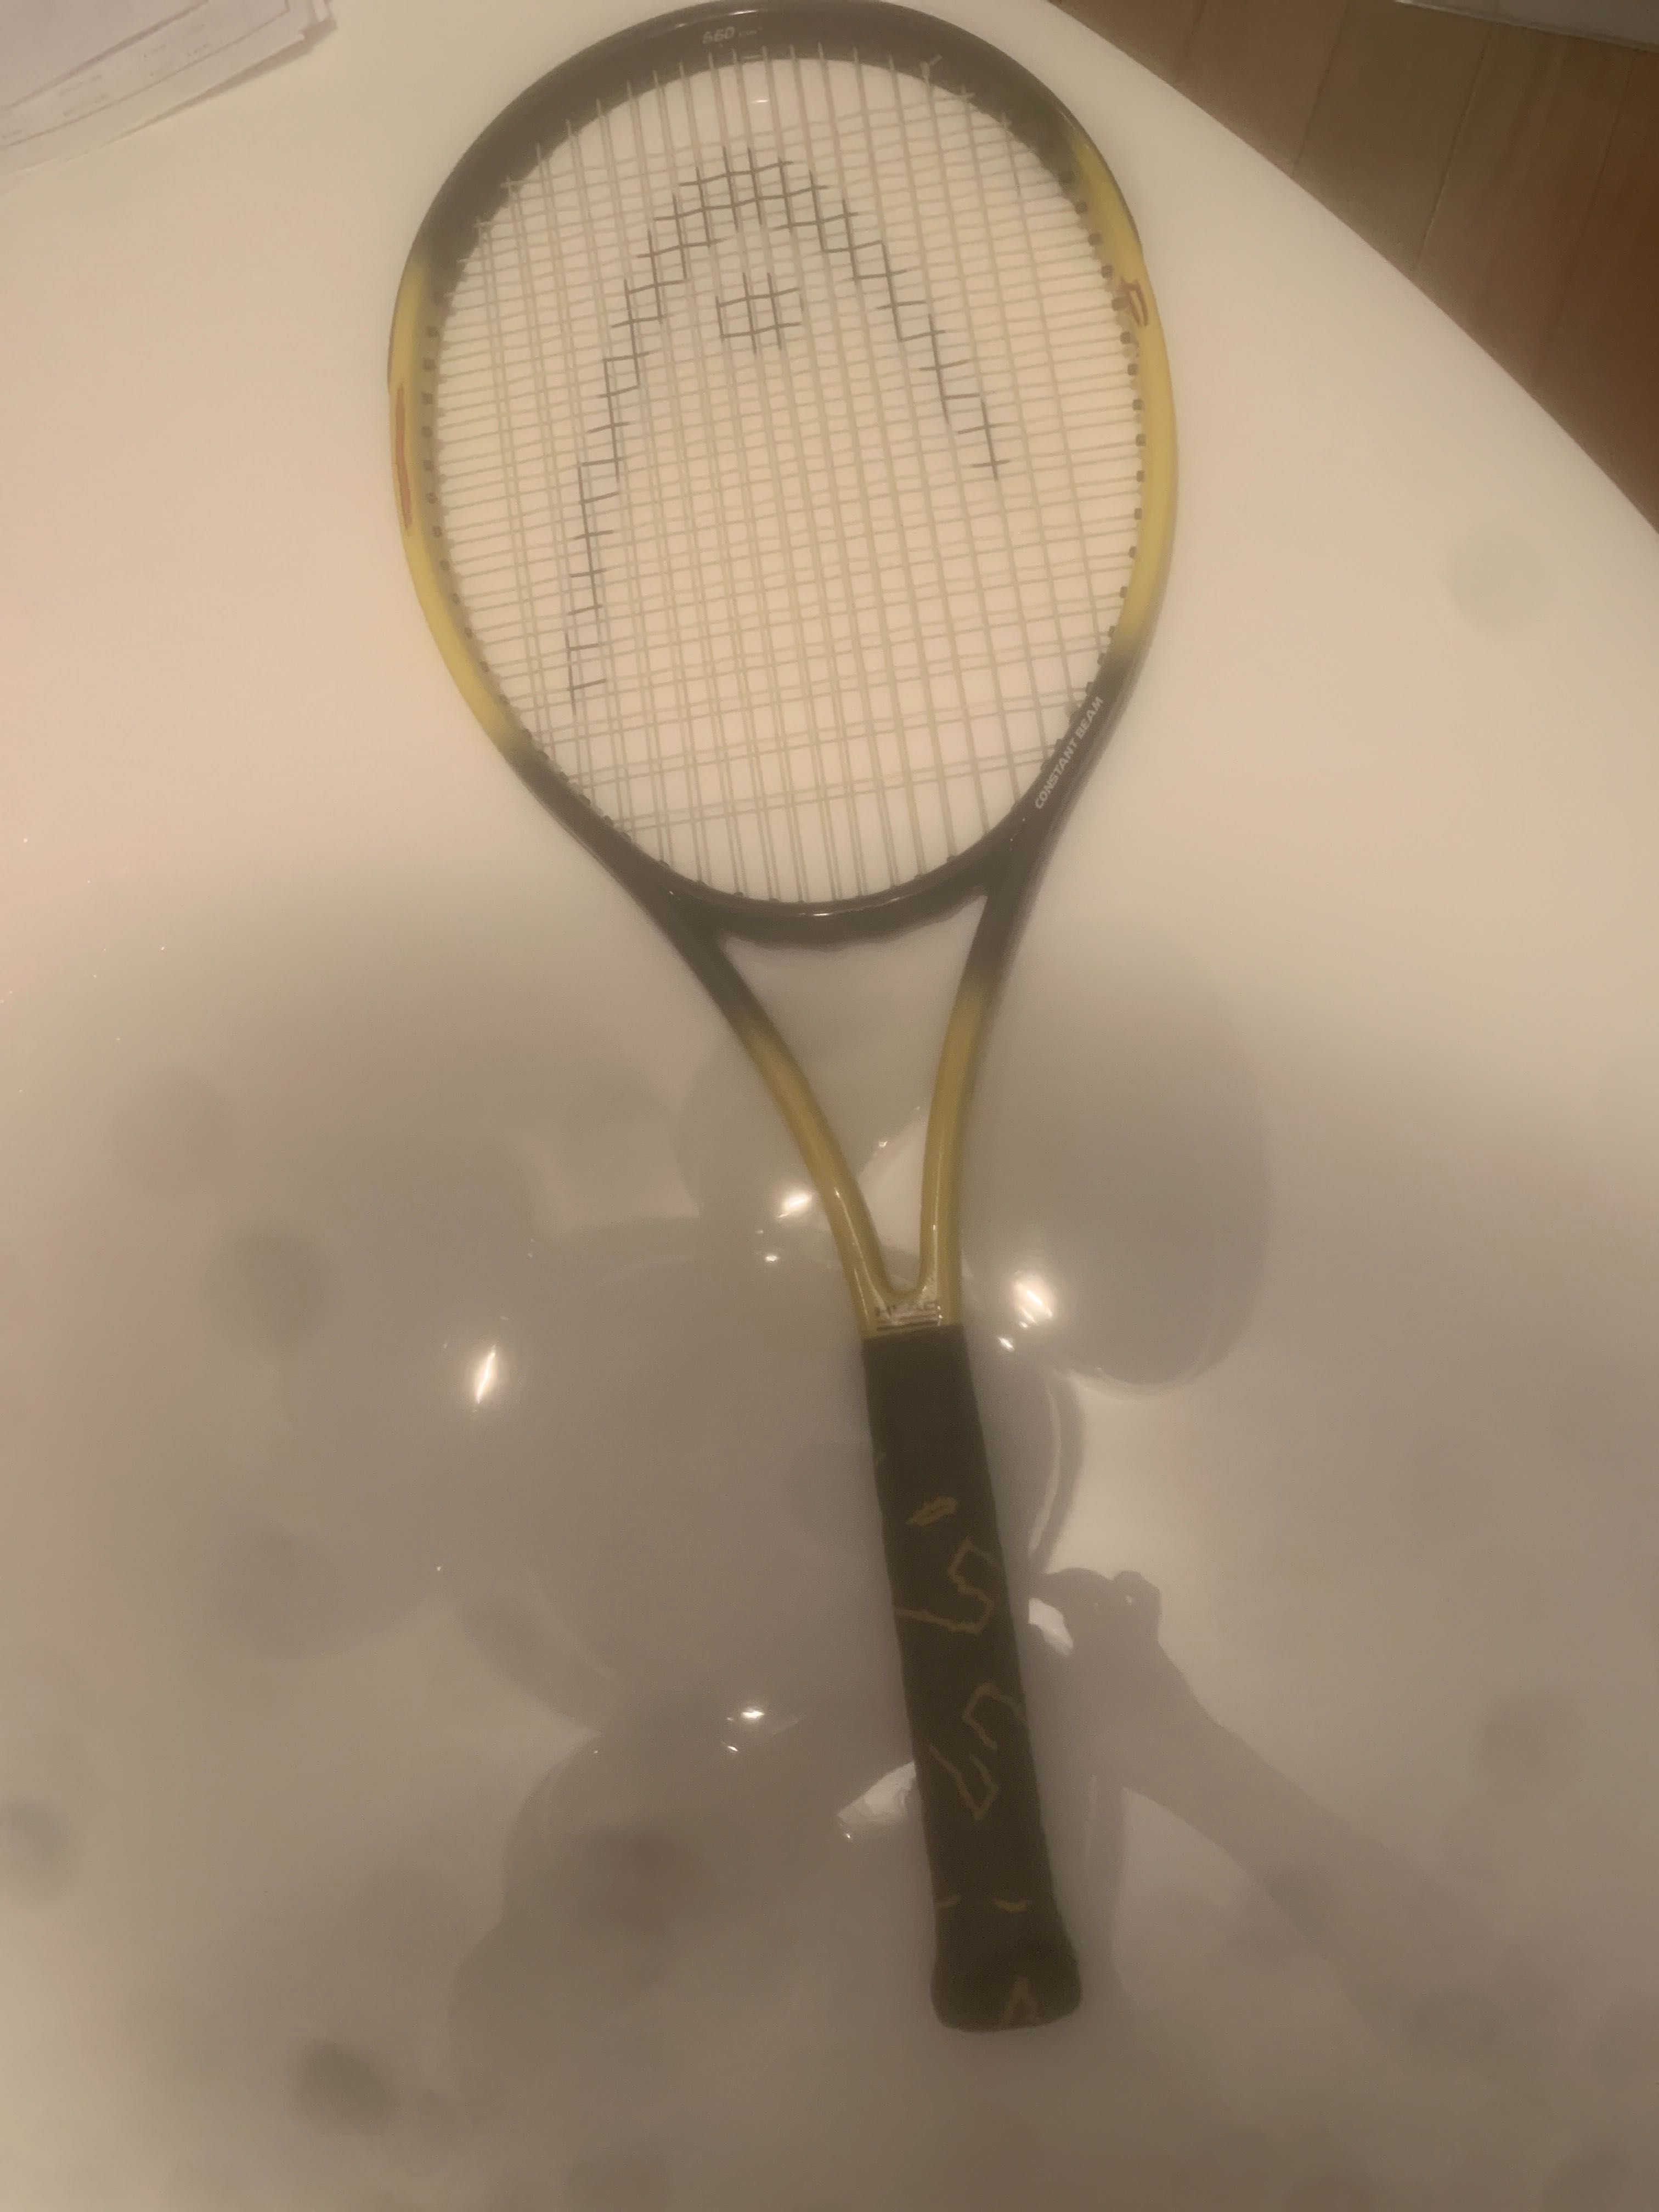 Raquete de ténis head amarela e preta boa e praticamente nova